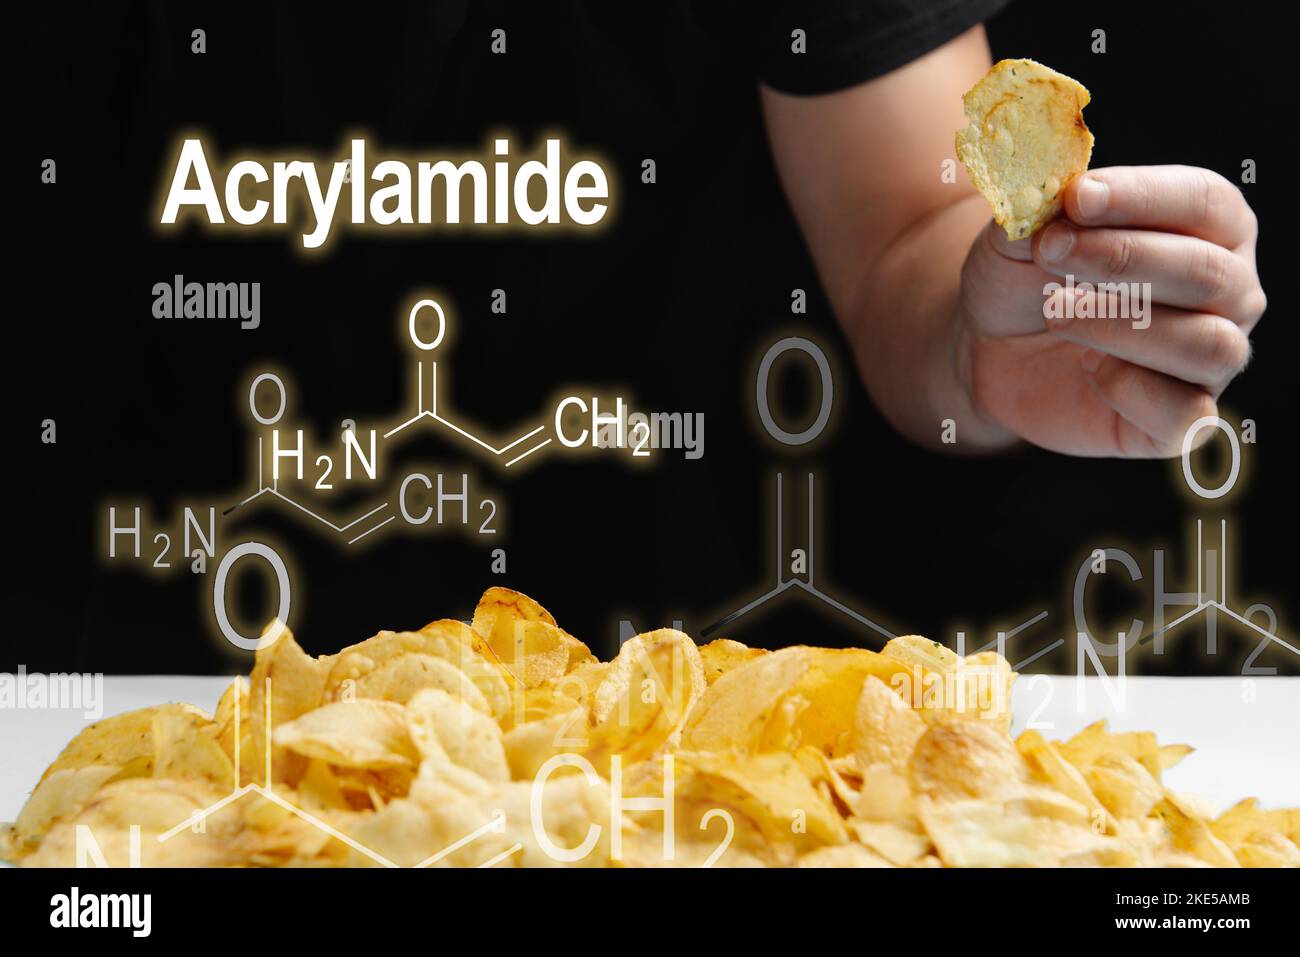 Mann isst frittierte Lebensmittel, Chips hoch in Acrylamid. Acrylamidformel auf schwarzem Hintergrund Stockfoto